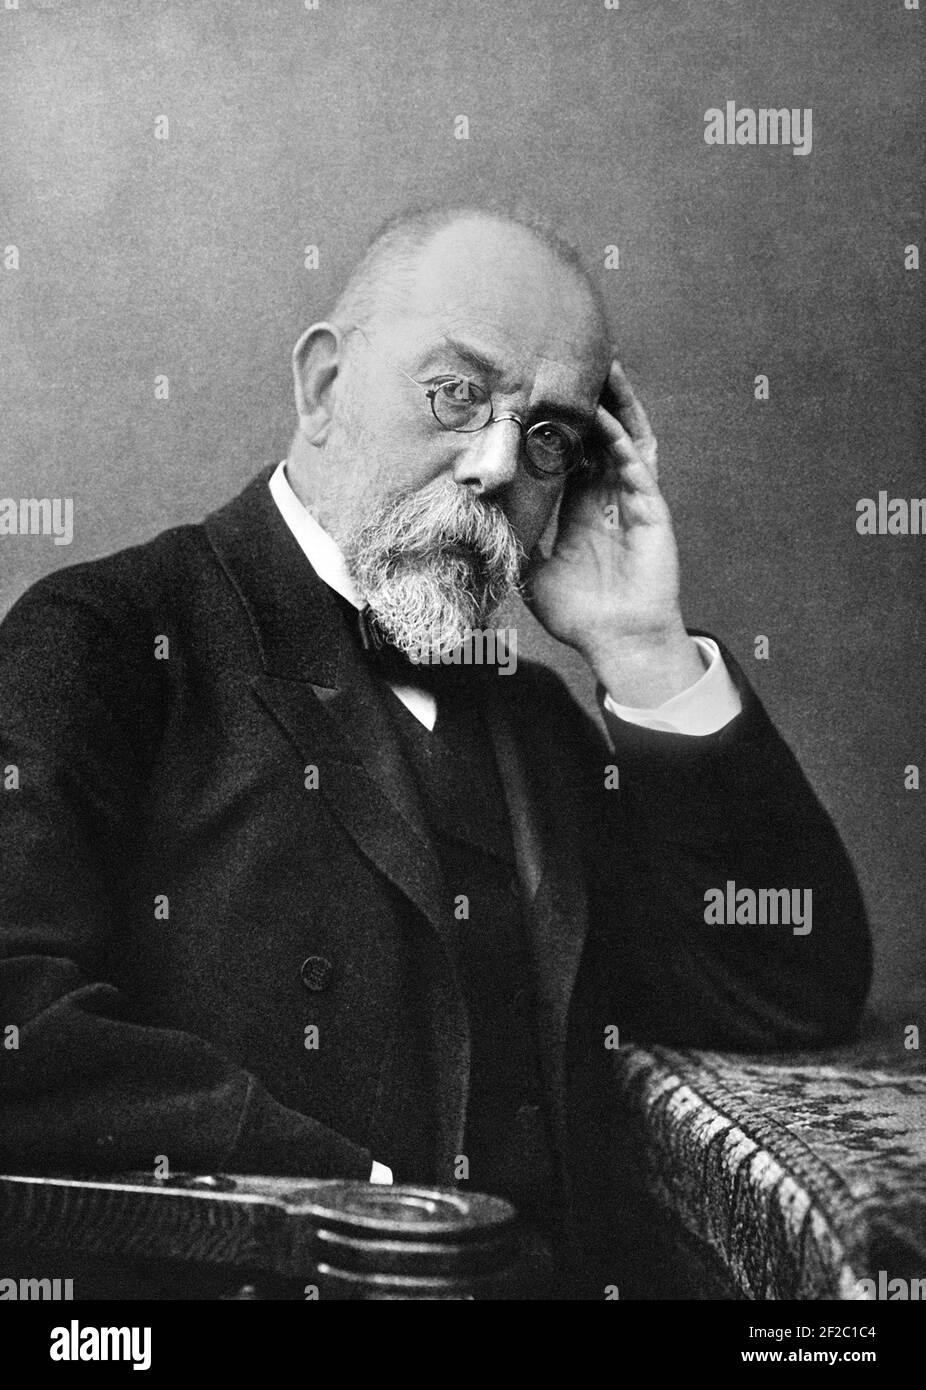 Robert Koch. Portrait du microbiologiste et médecin allemand lauréat du prix Nobel, Heinrich Hermann Robert Koch (1843-1910), vers 1895-1910 Banque D'Images